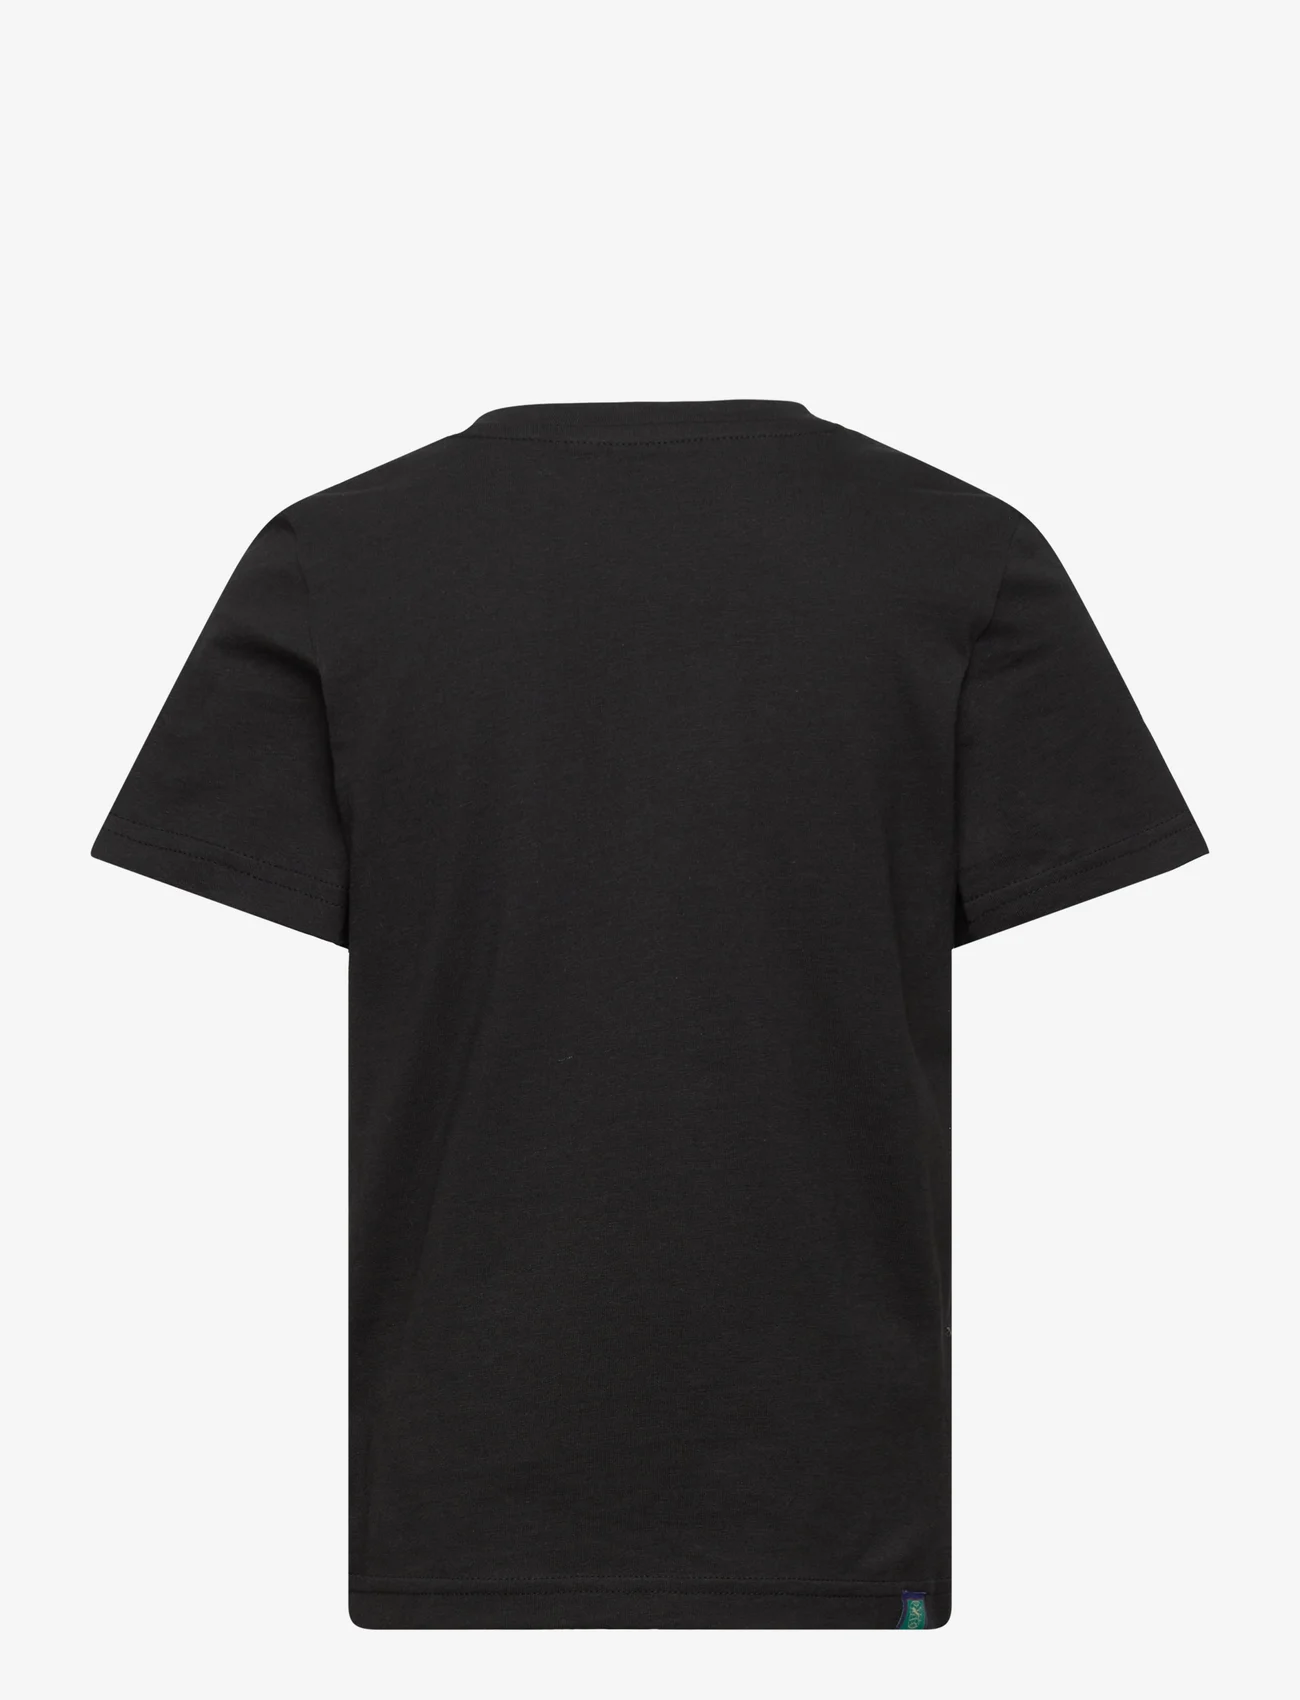 PUMA - READY SET BETTER Tee B - kortärmade t-shirts - puma black - 1